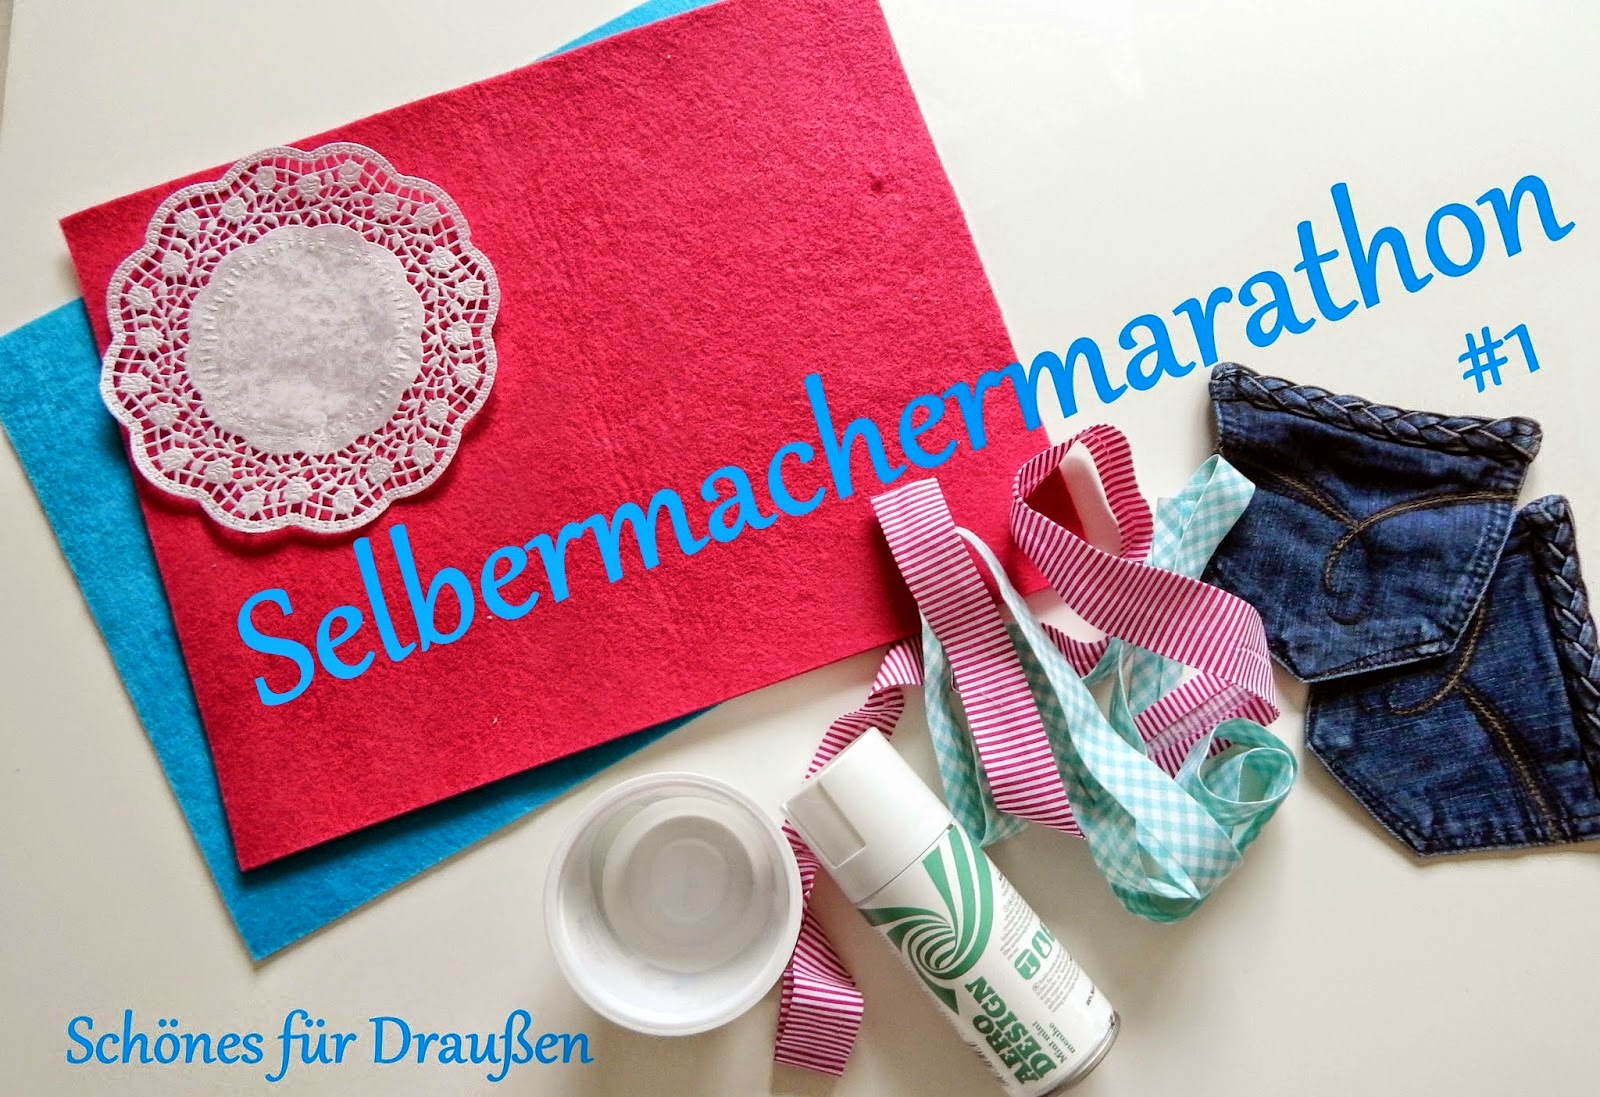 http://julchennaeht.blogspot.de/2014/05/selbermacher-marathon-1.html